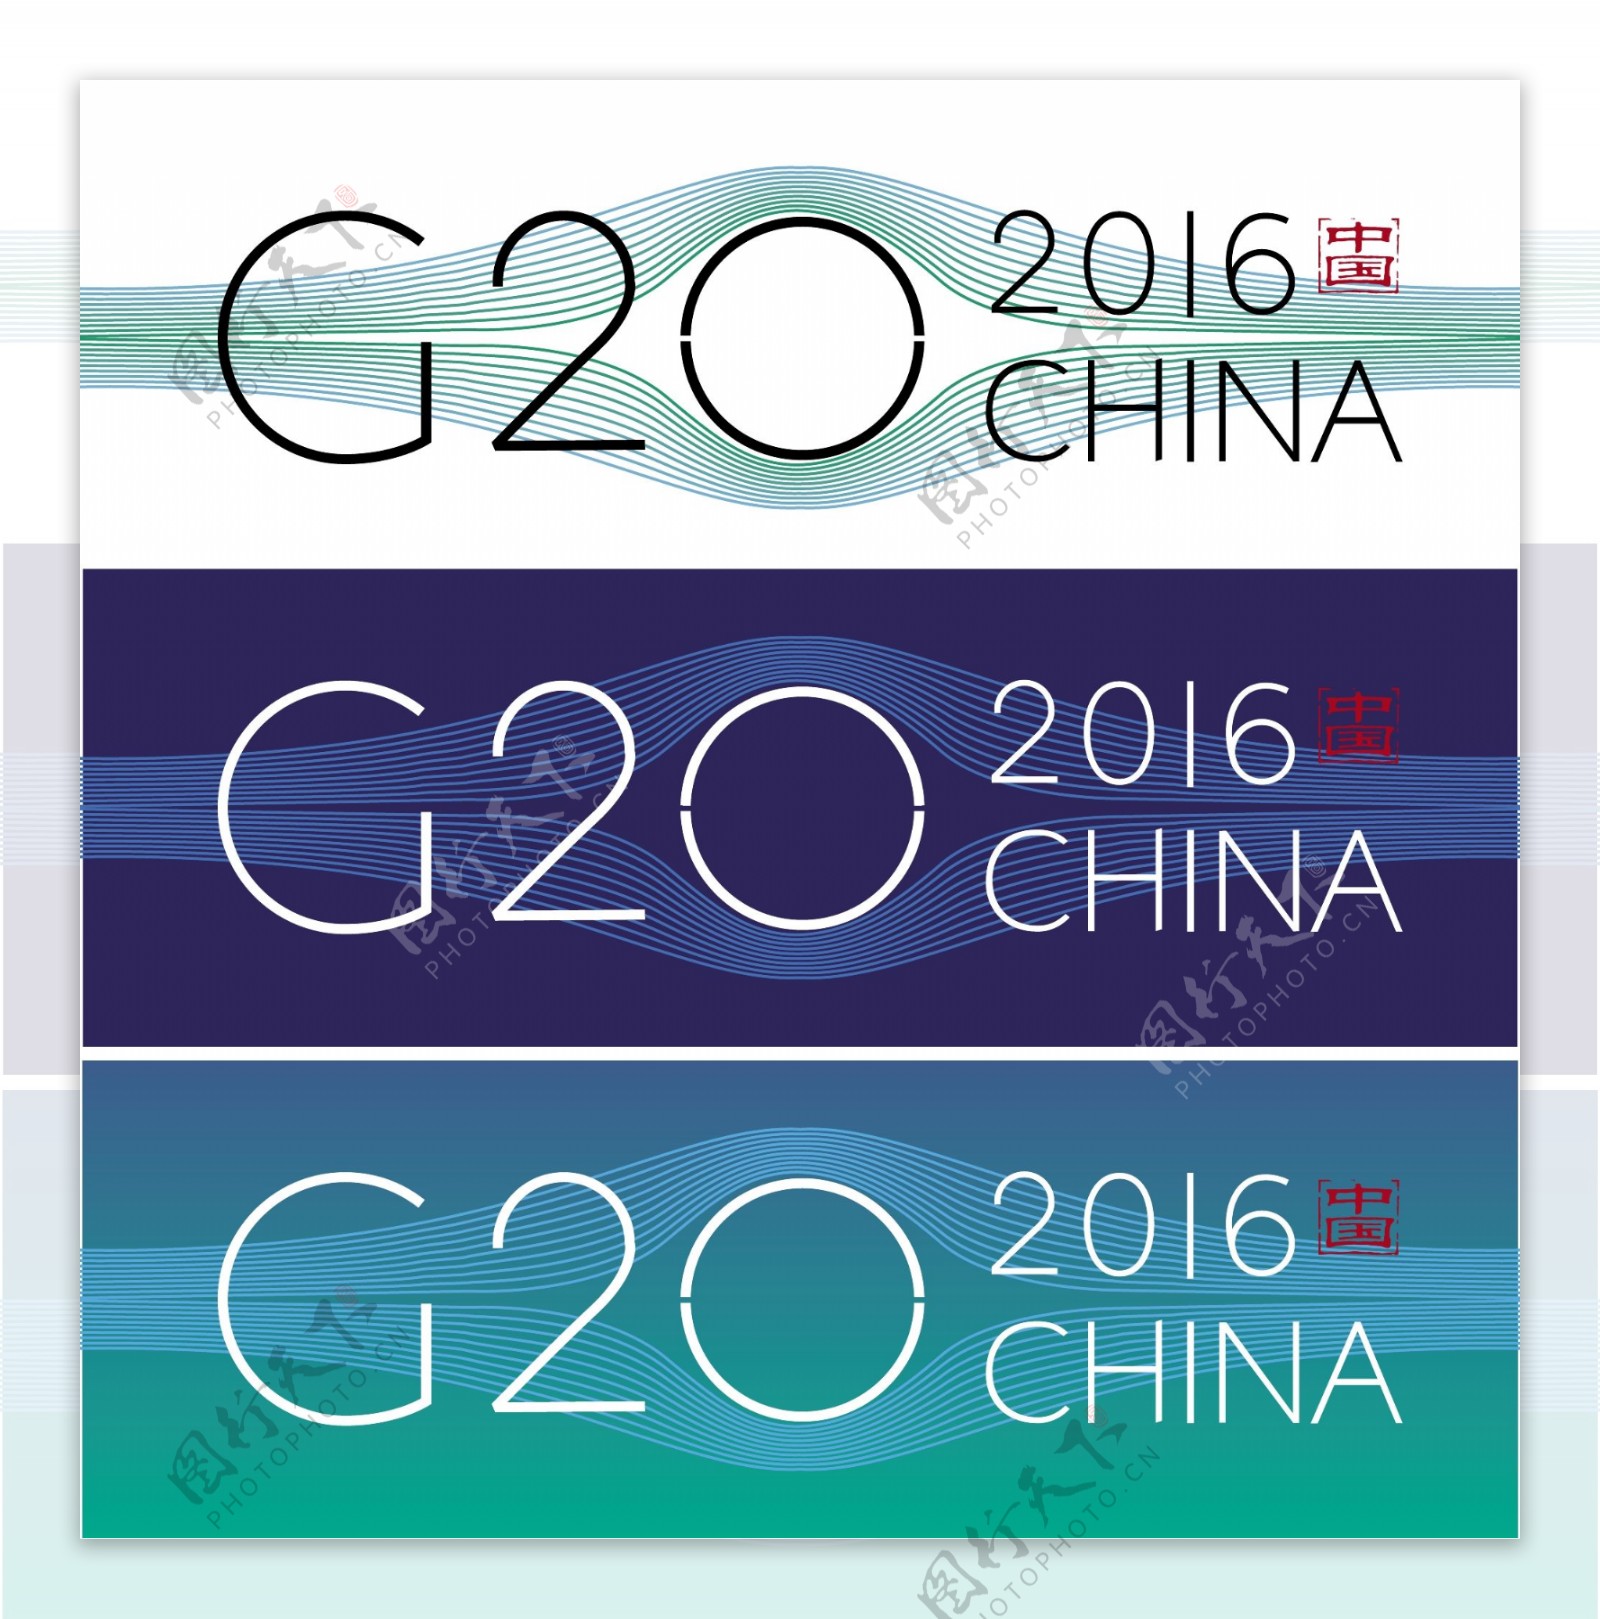 2016杭州G20峰会LOGO